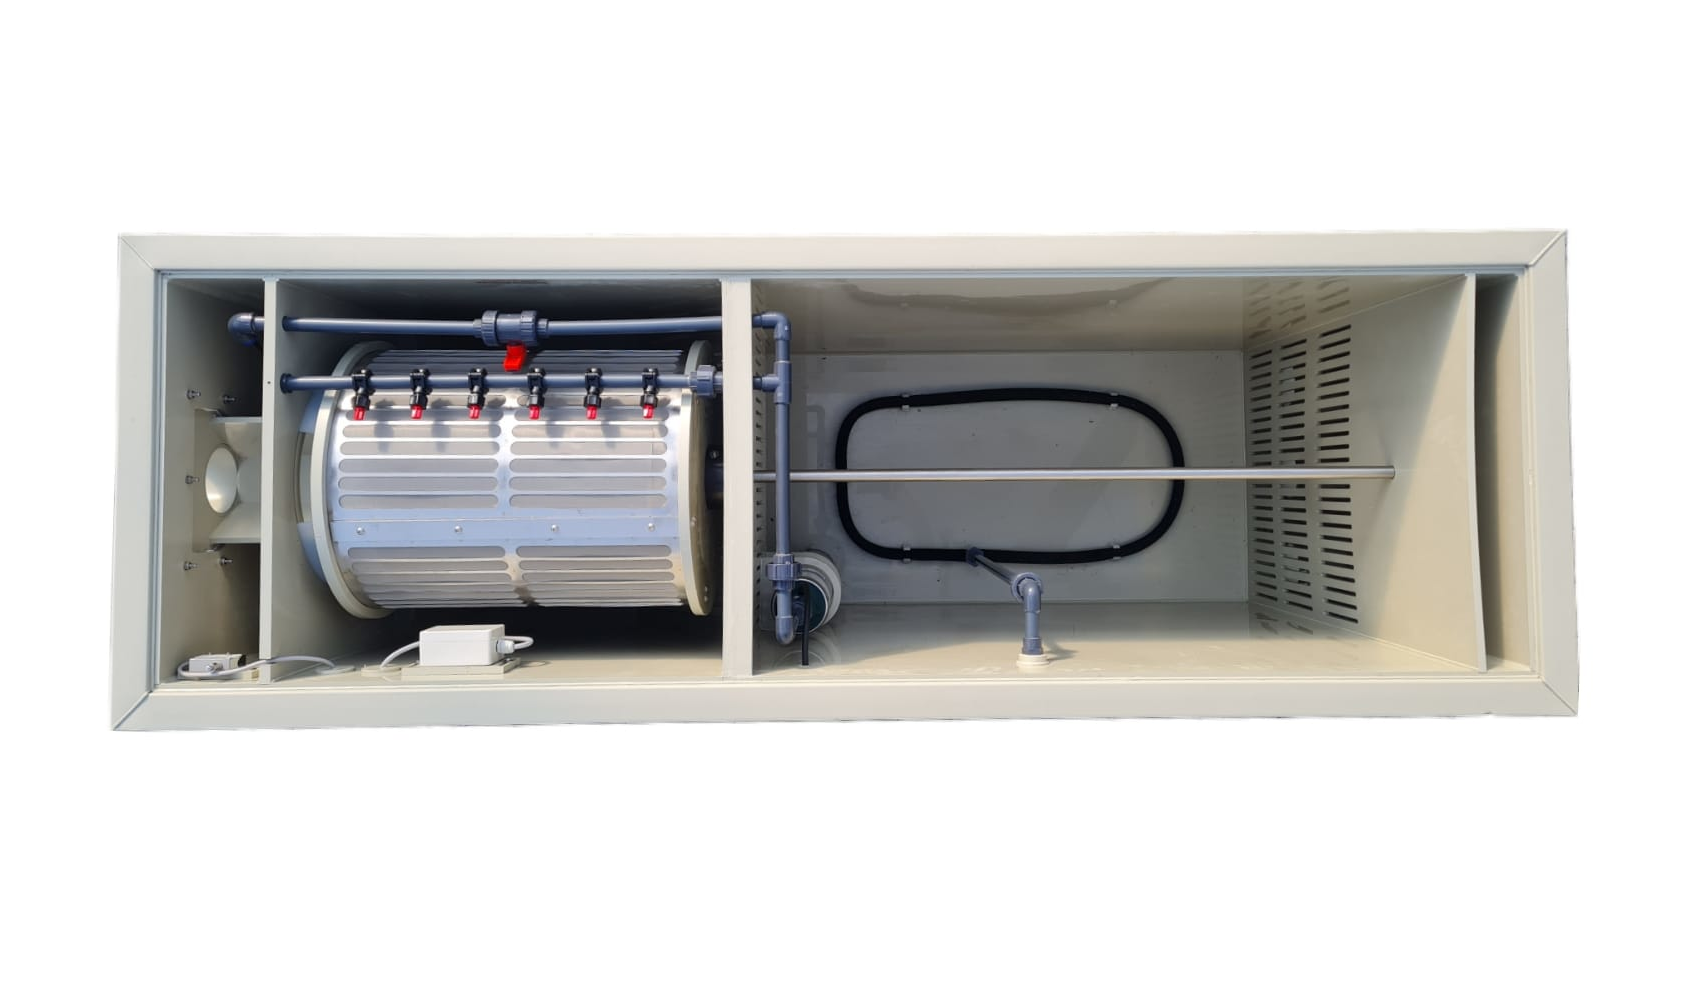 EPS Combi-Trommelfilter CL35 + integrierte Biokammer + Rinnenspülung + Steuerung + Spülpumpe + UV-Schutz + Edelstahlsieb in Sandwichbauweise